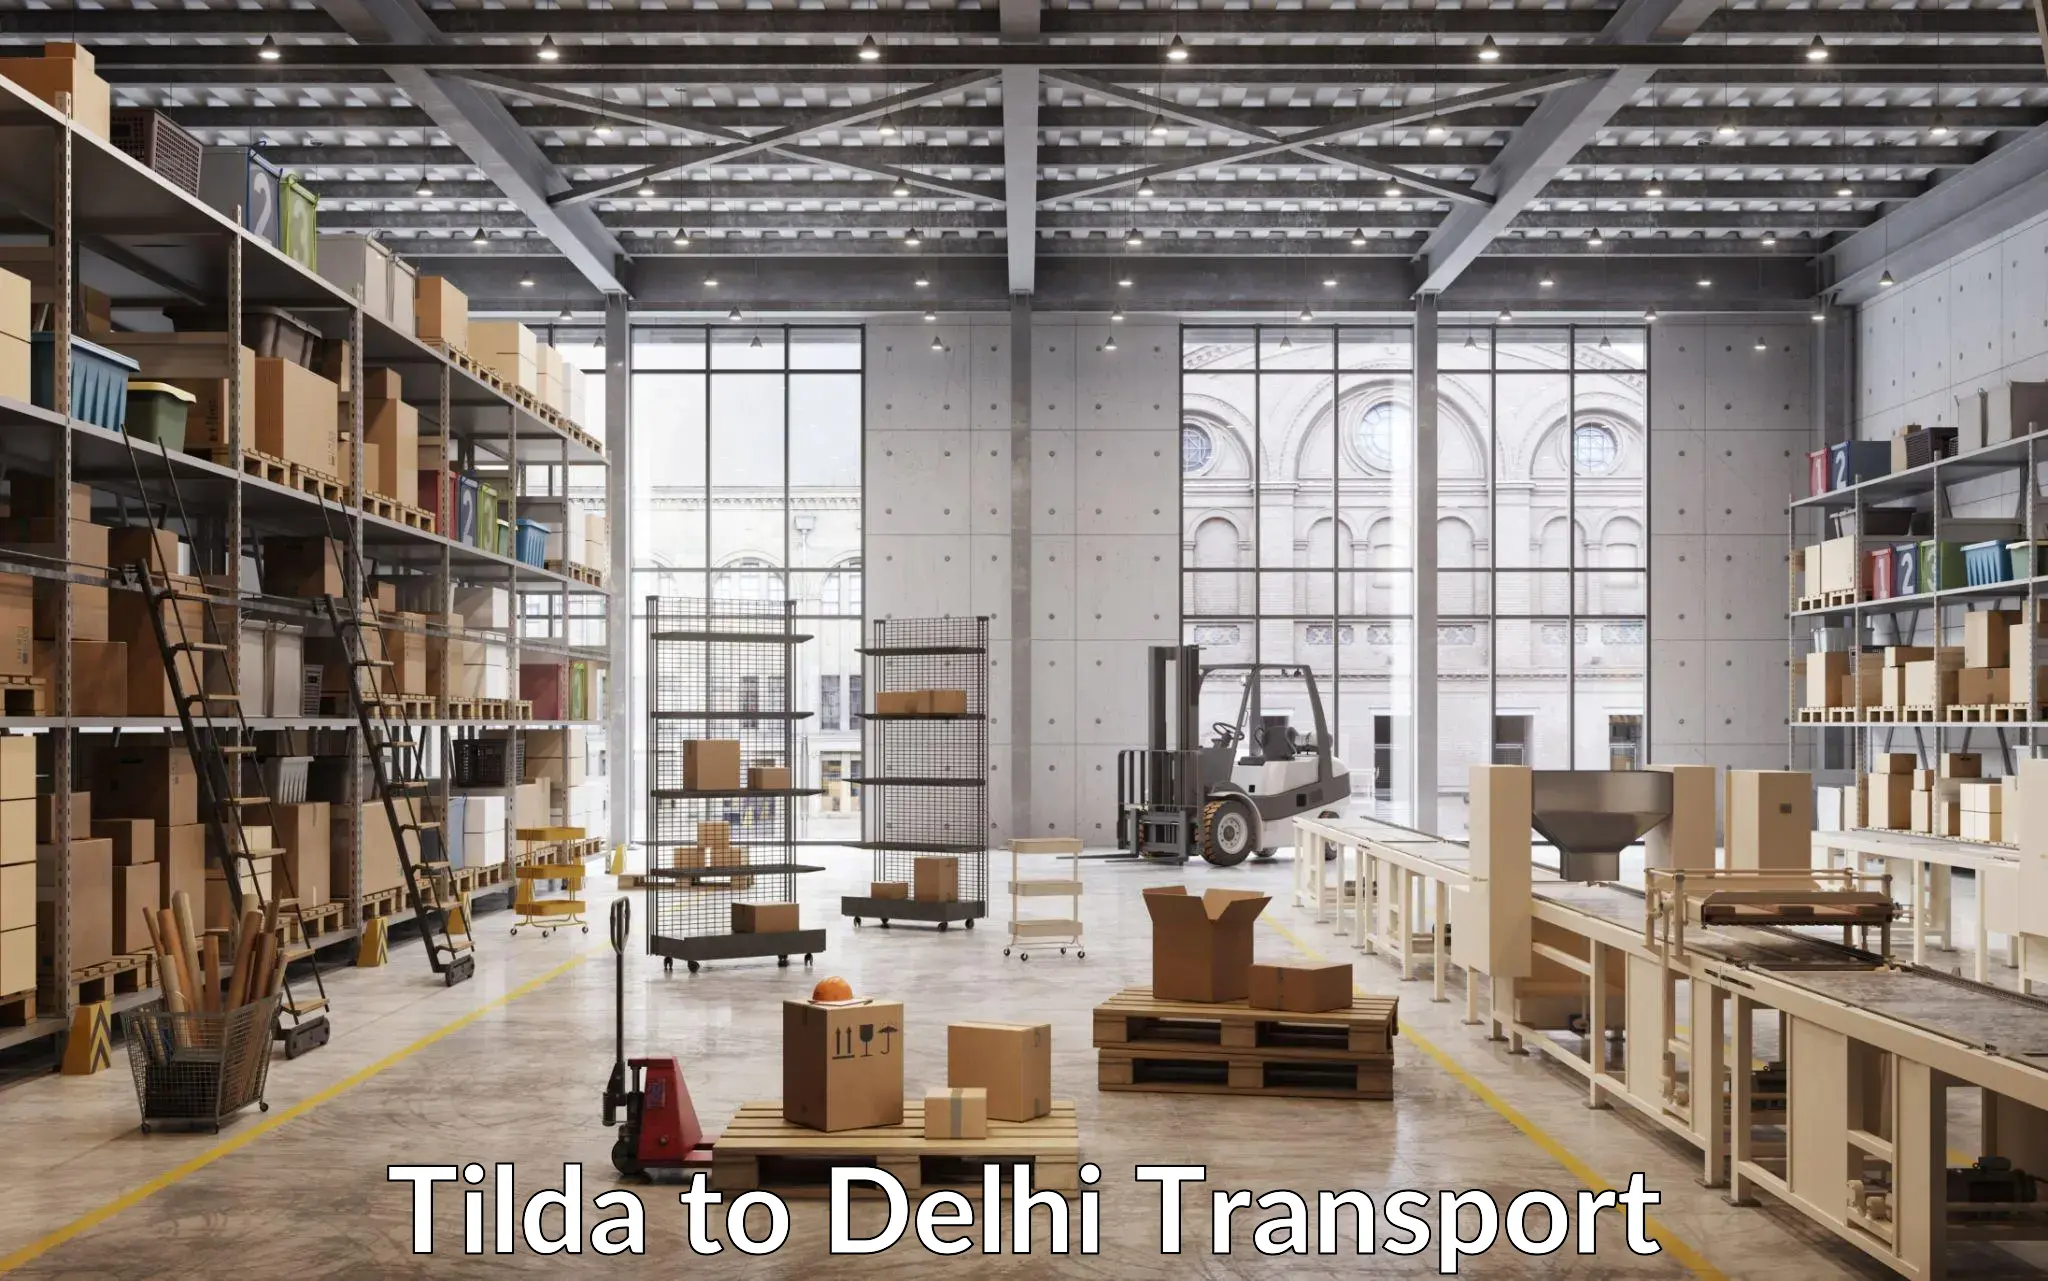 Express transport services Tilda to East Delhi